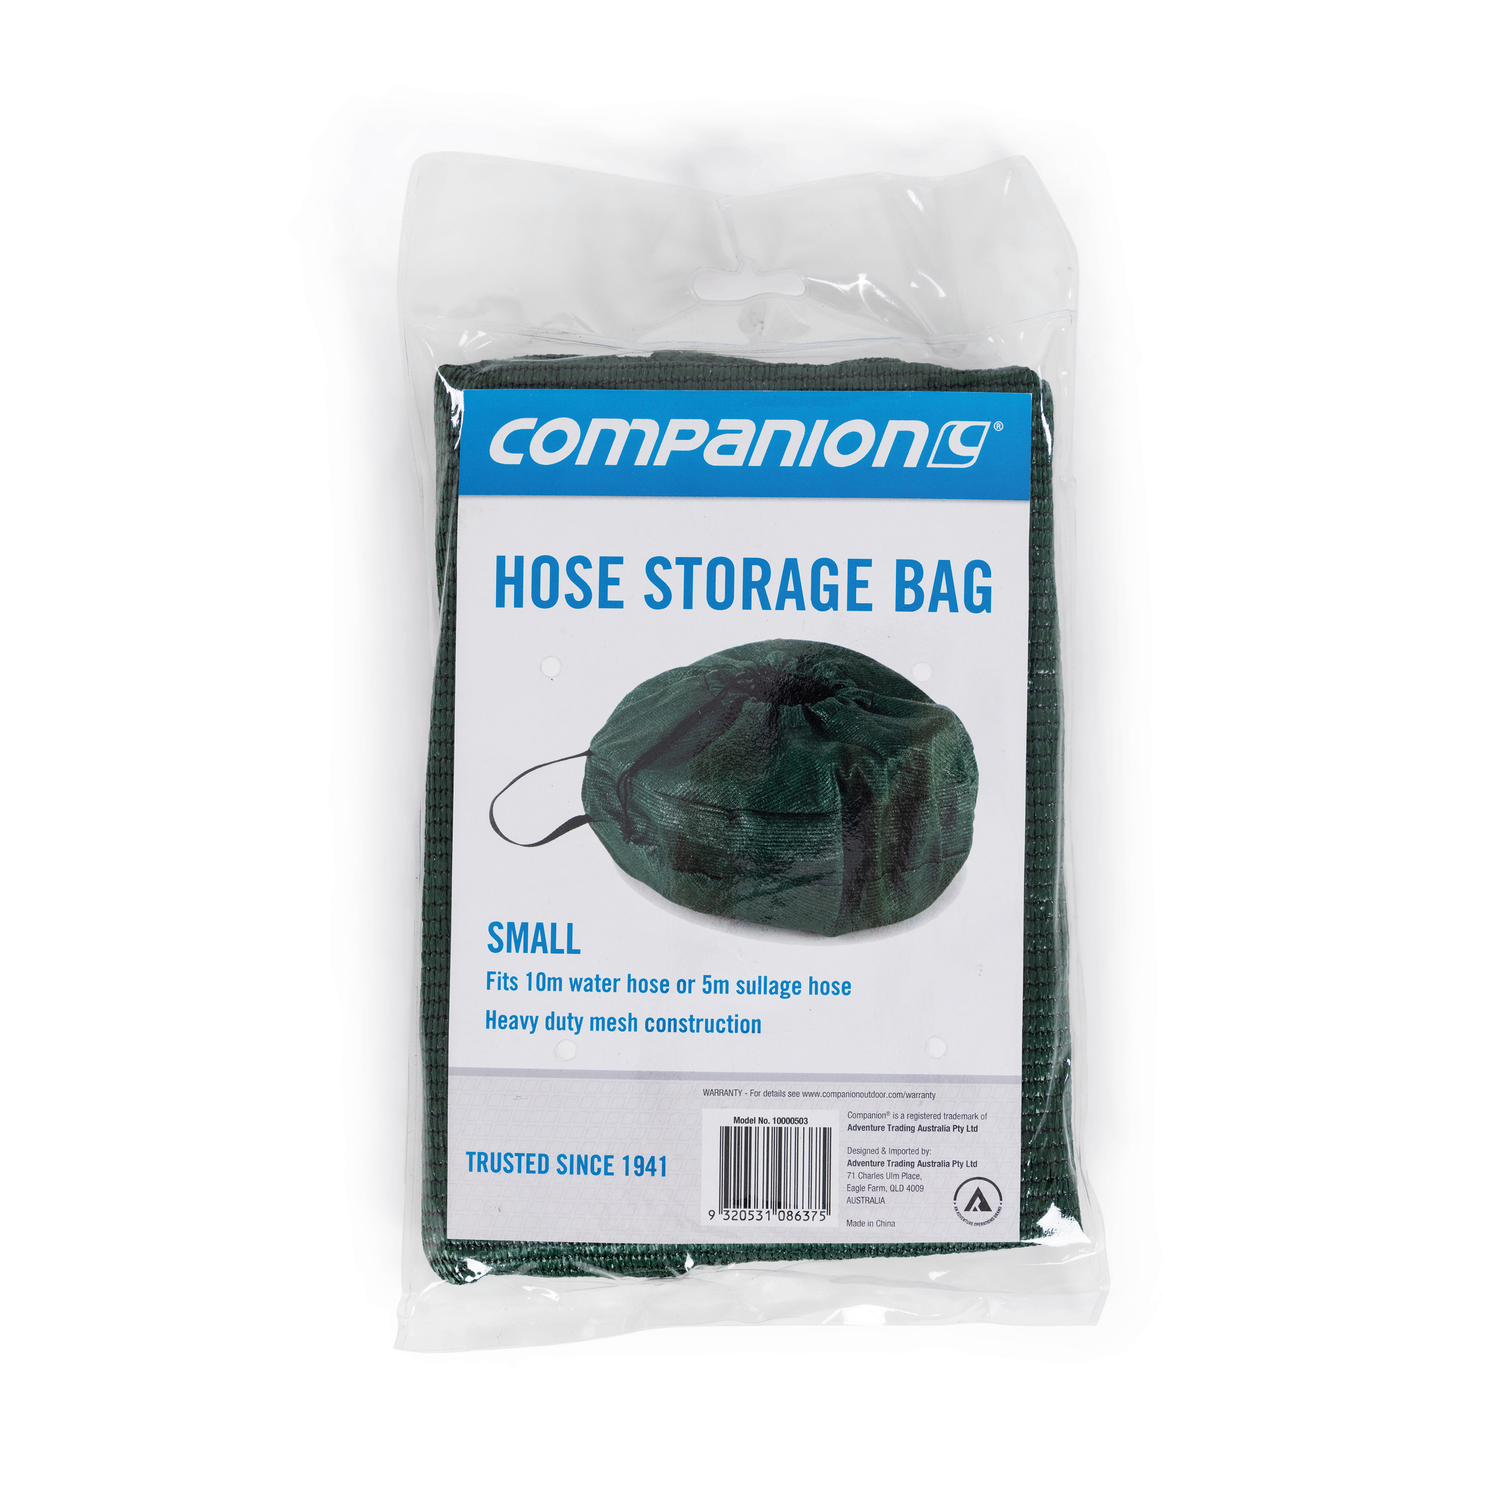 Hose Storage Bag Small